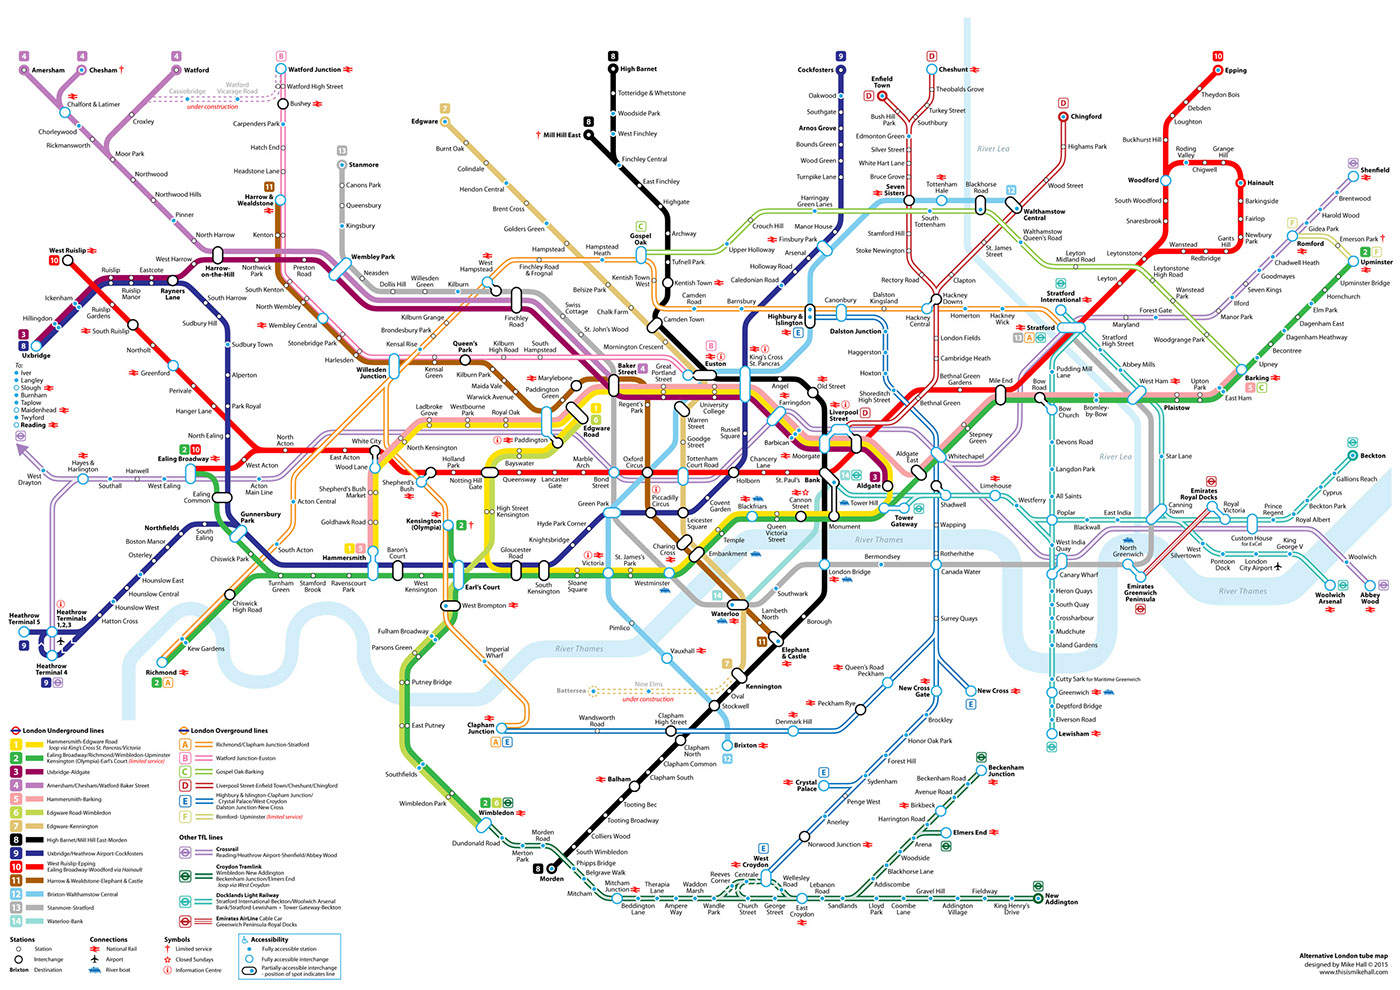 Alternative 2015 Tube Map Design on Behance